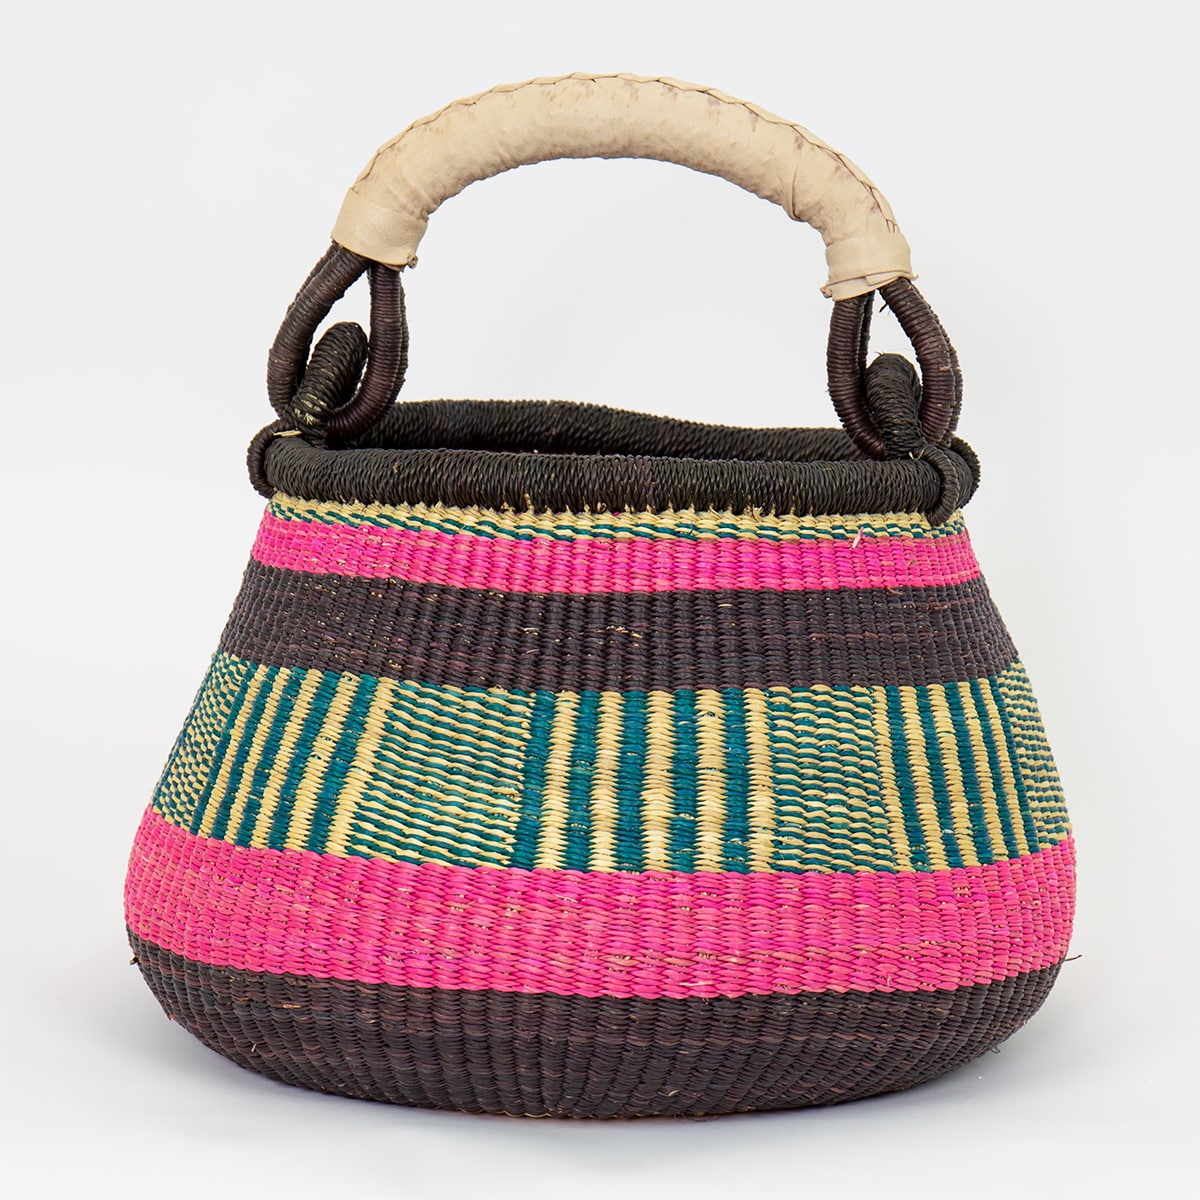 BOLGA POT Basket, Brown/turquoise/pink